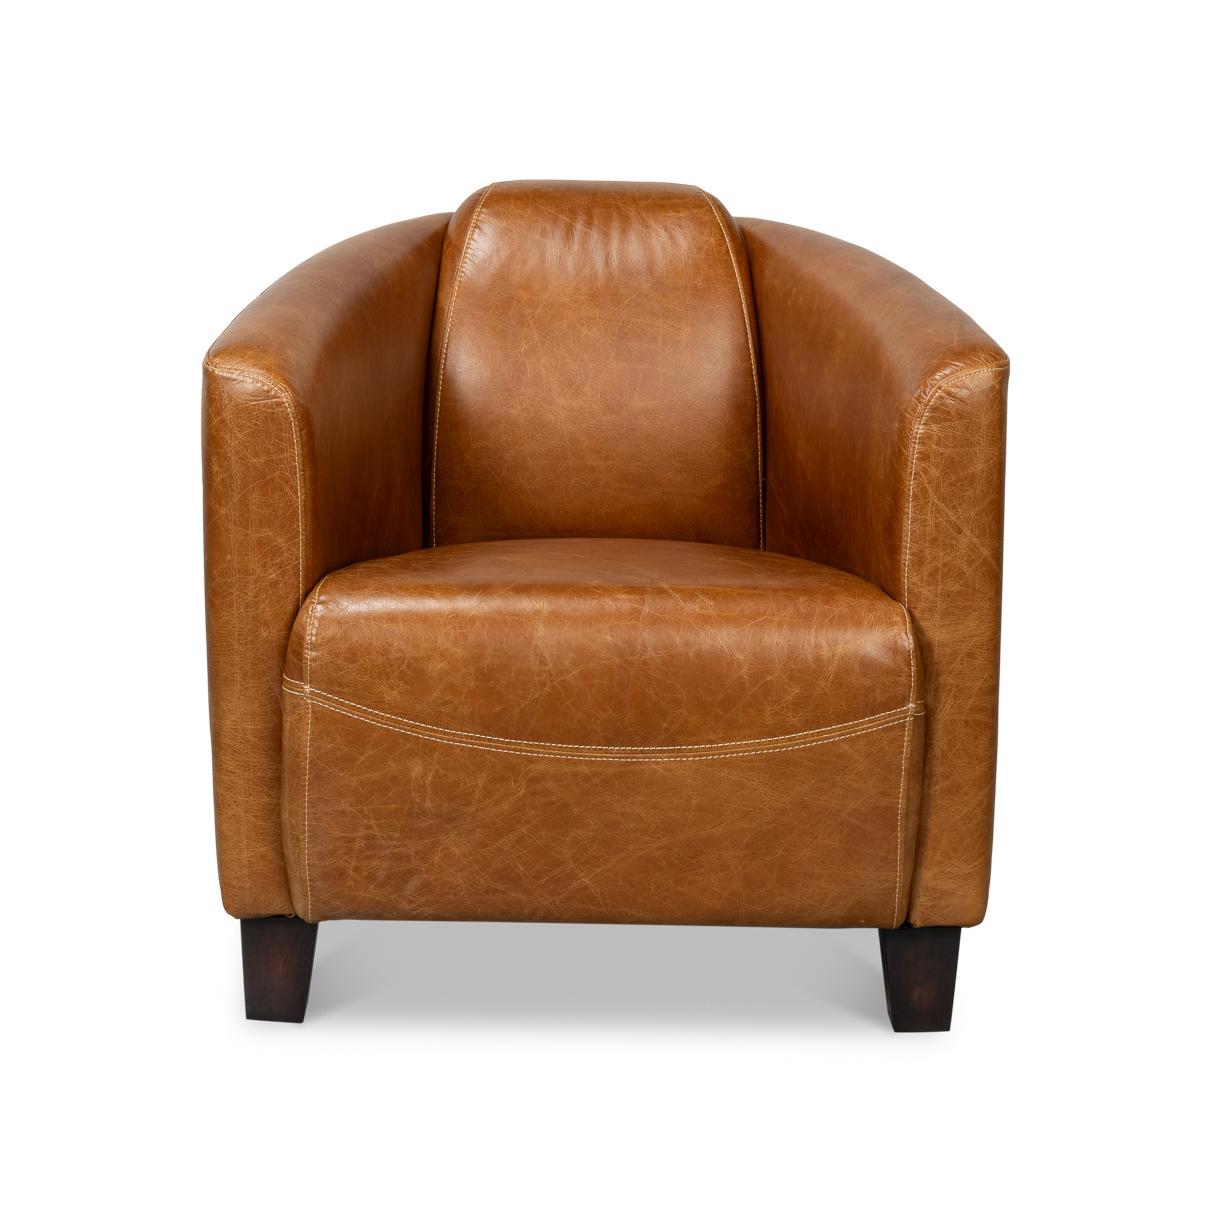 Dieser stilvolle und bequeme Sessel aus luxuriösem Leder in warmen Brauntönen ist perfekt für Ihr DEN, Ihre Bibliothek oder Ihr Wohnzimmer.

Farbabweichungen sind bei altem Leder üblich und akzeptabel. 

Abmessungen: 28